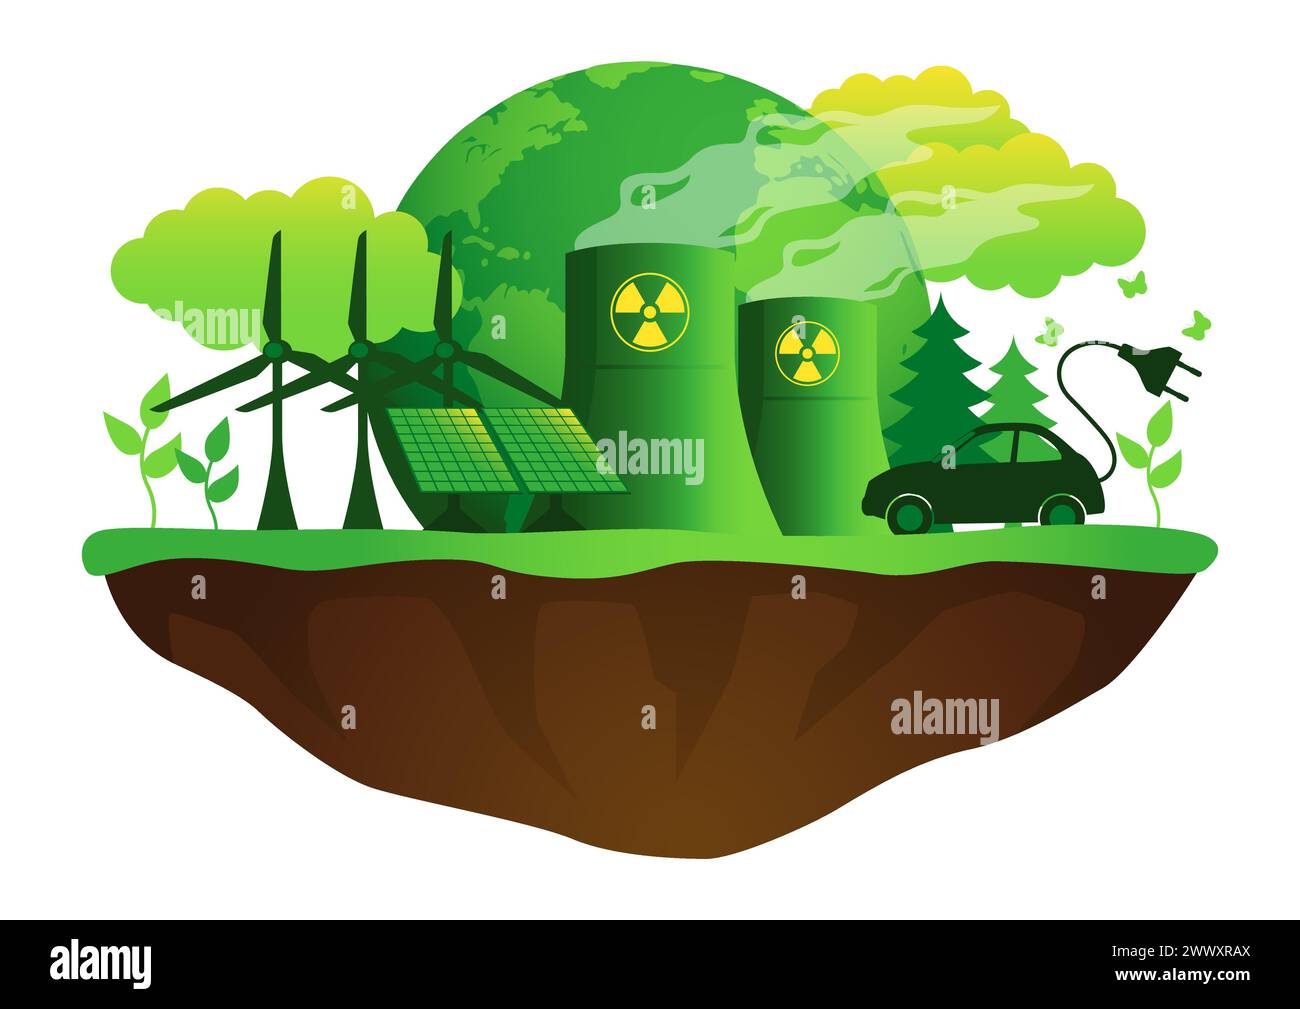 Icône d'énergie verte écologique. Ce graphique combine des symboles de l'énergie éolienne, de l'énergie nucléaire et des panneaux solaires, représentant une synergie harmonieuse vers le War Illustration de Vecteur